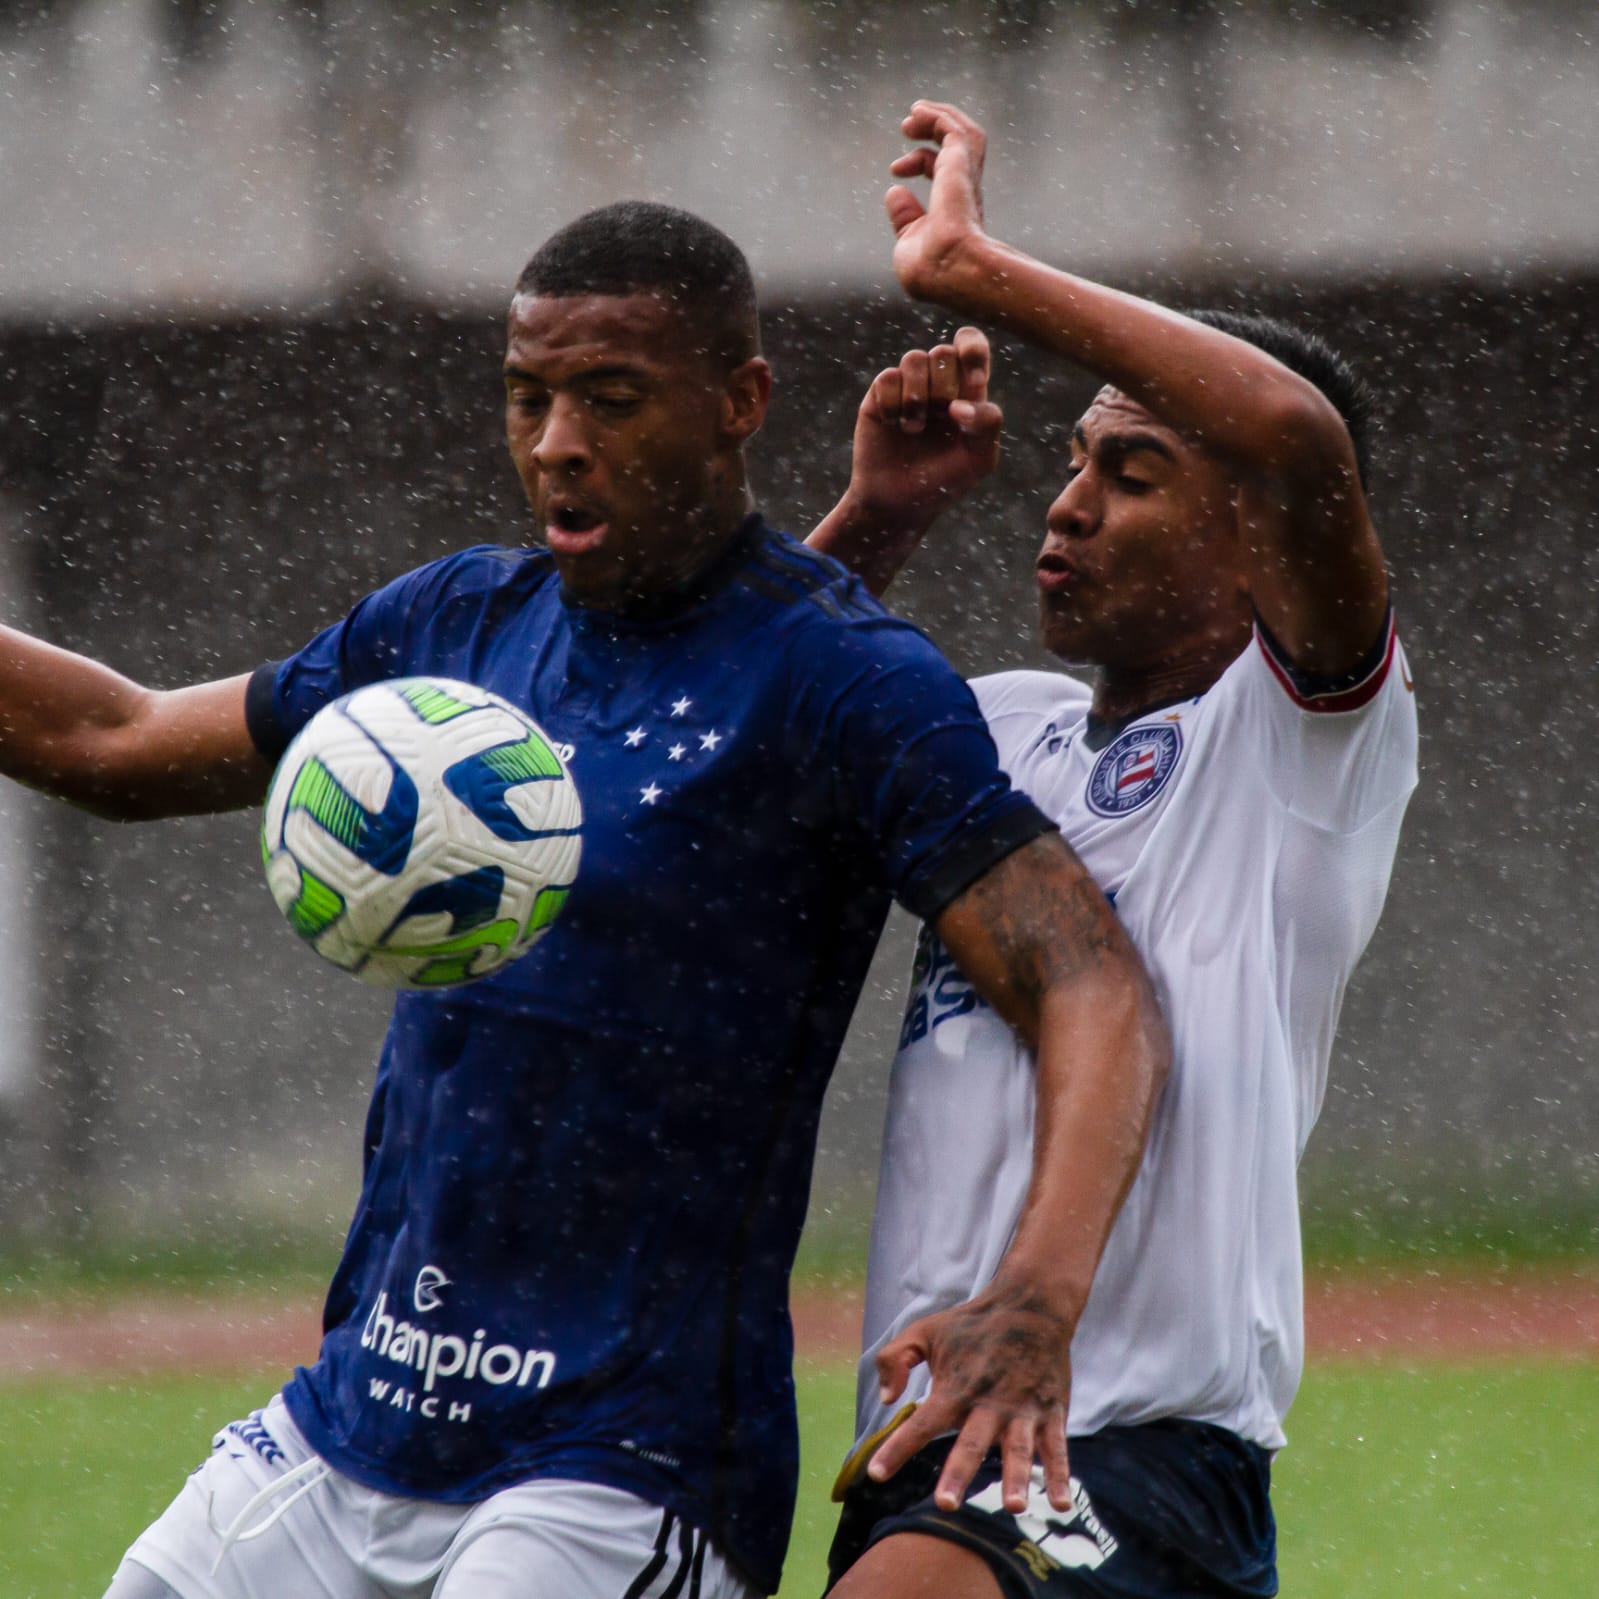 Cruzeiro divulga relacionados para jogo com Bahia pelo Brasileiro > No  Ataque